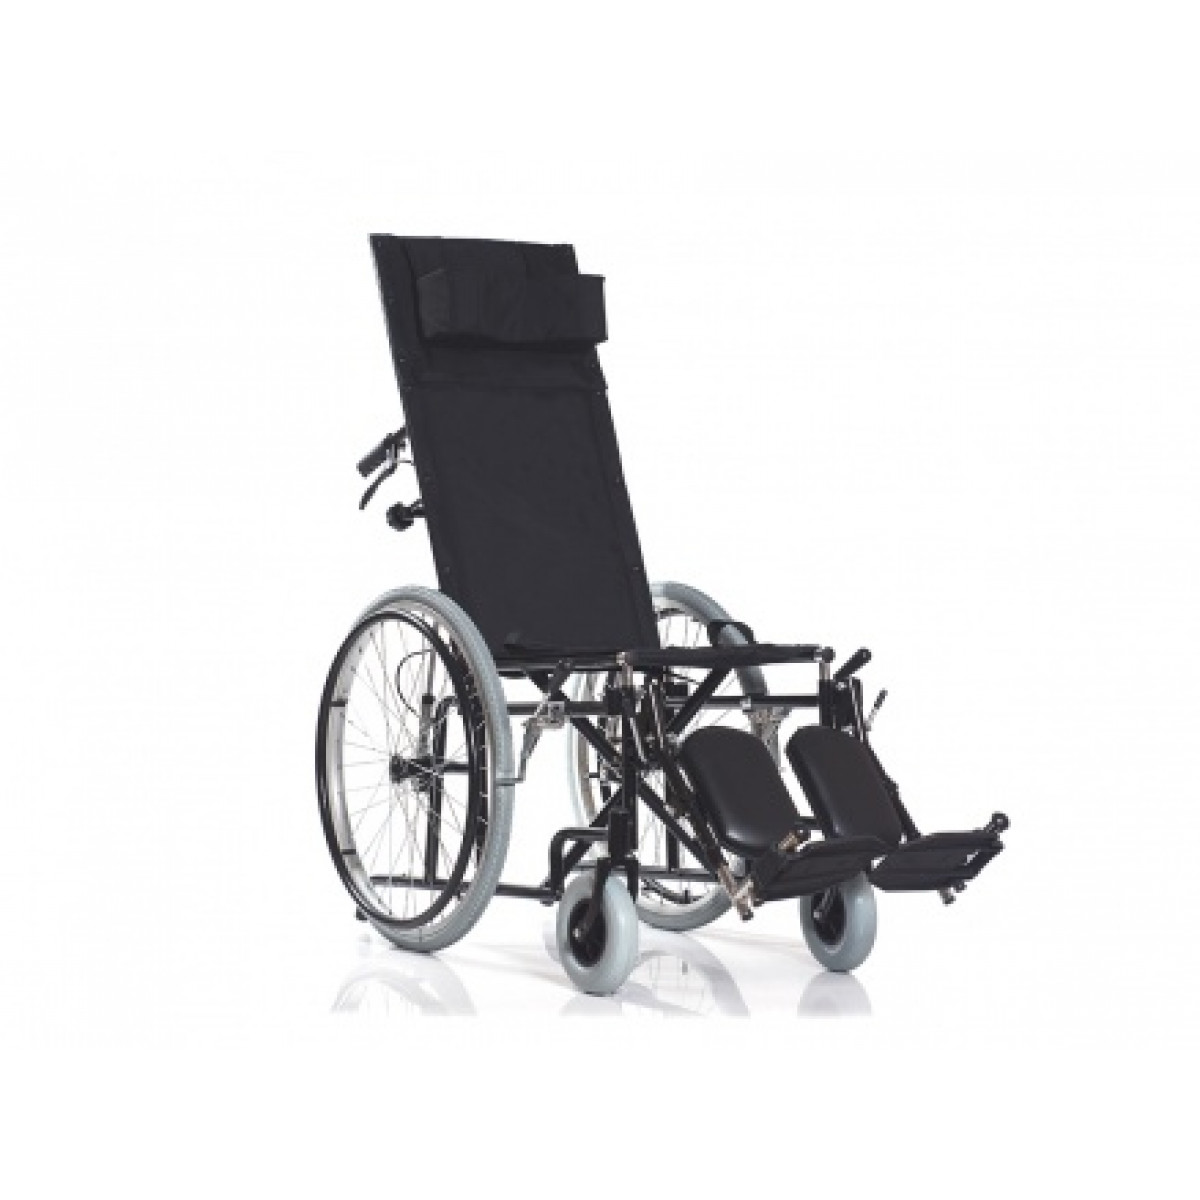 Коляски инвалидные base. Инвалидное кресло-коляска Ортоника. Инвалидная коляска Ортоника Base 115. Ky123 кресло коляска с электроприводом. Кресло-коляска Base 100.